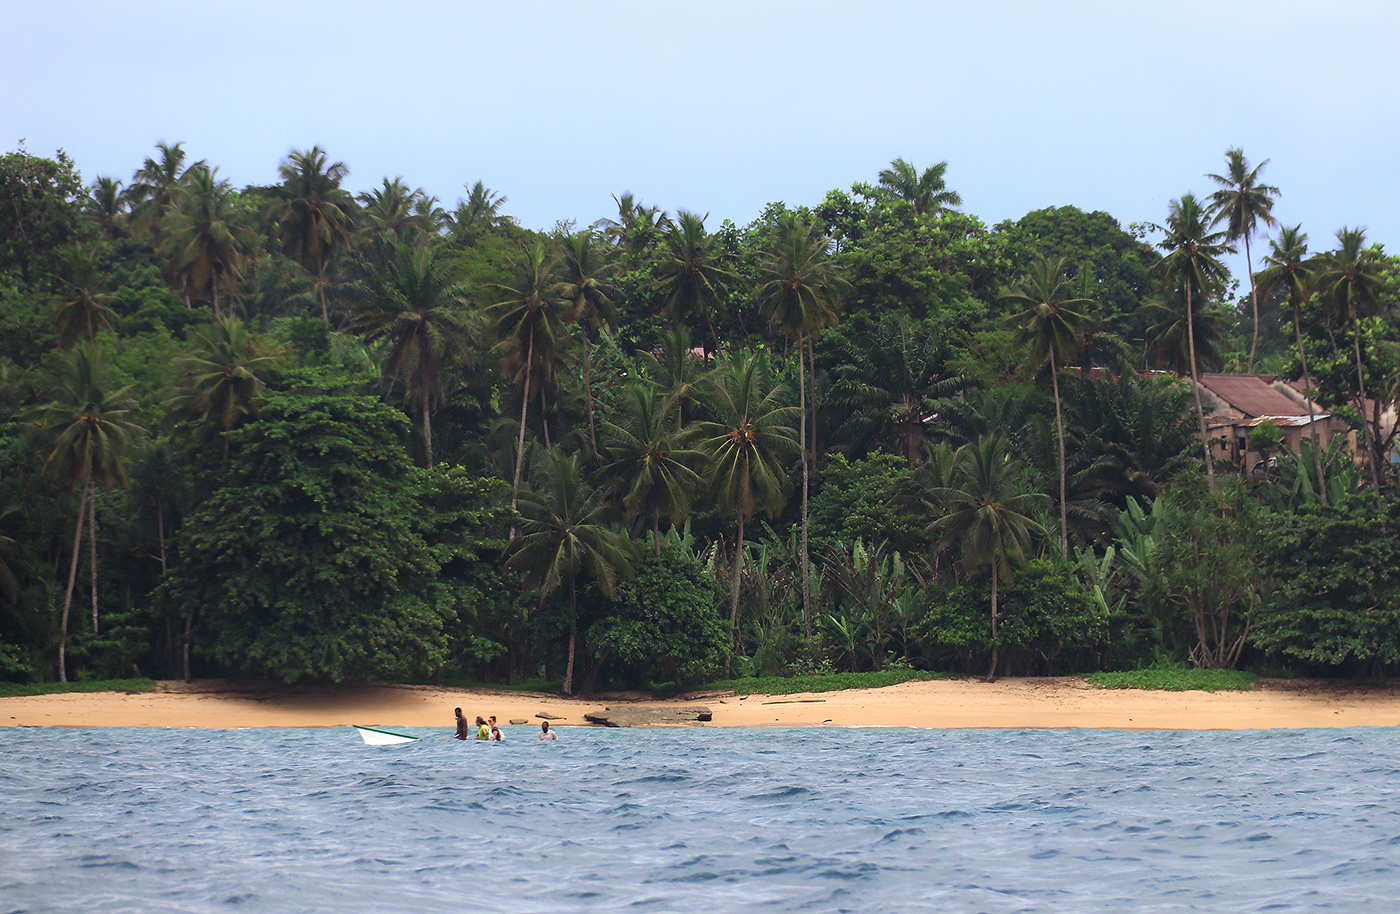 beach beaches equador equator islands São Tomé tropical beaches tropics Palm Trees paradise